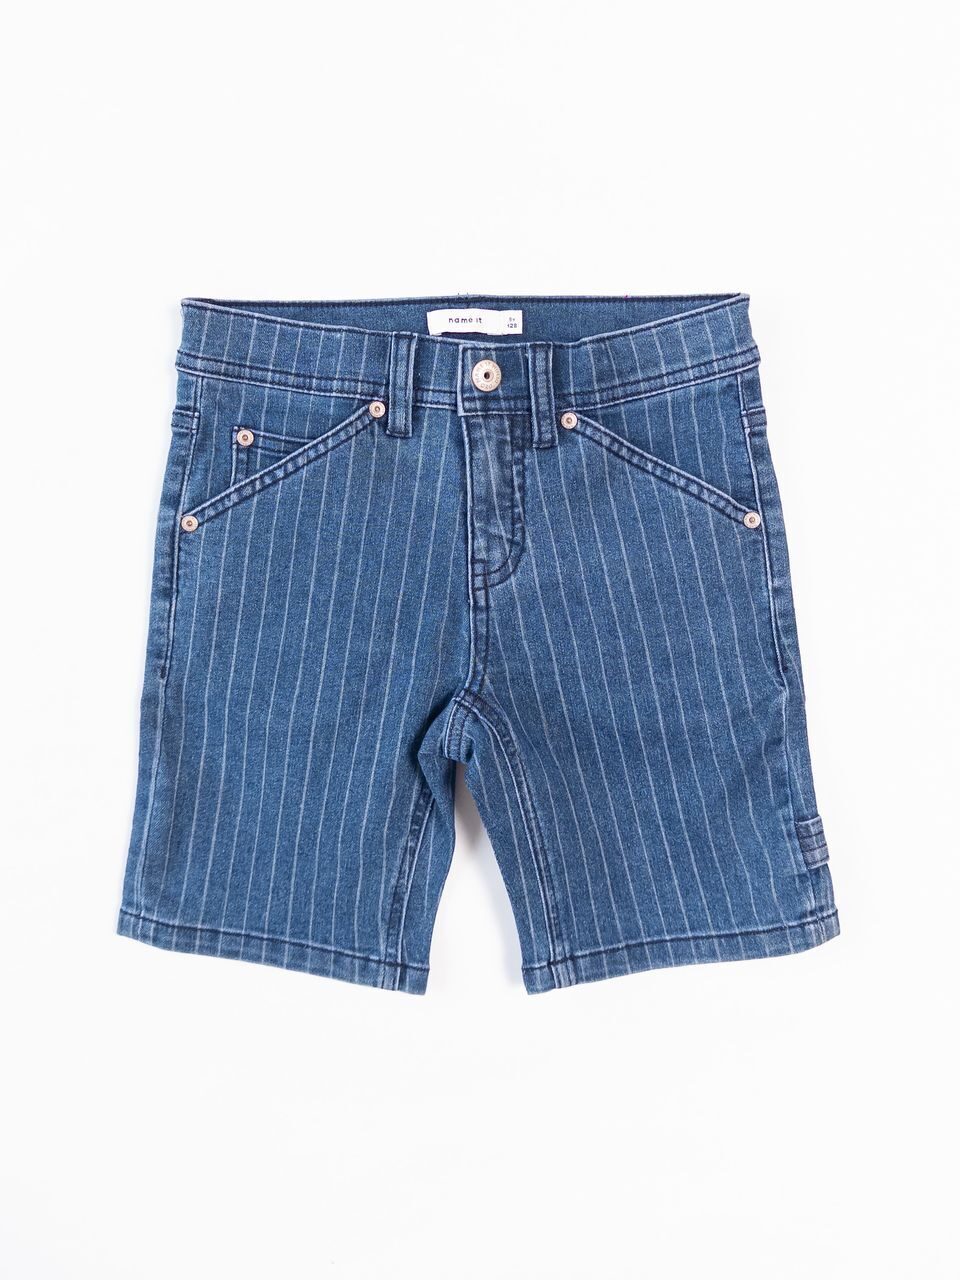 Шорты джинсовые для мальчика с утягивающей резинкой в поясе цвет синий/полоска на рост 128 см 7-8 лет name it